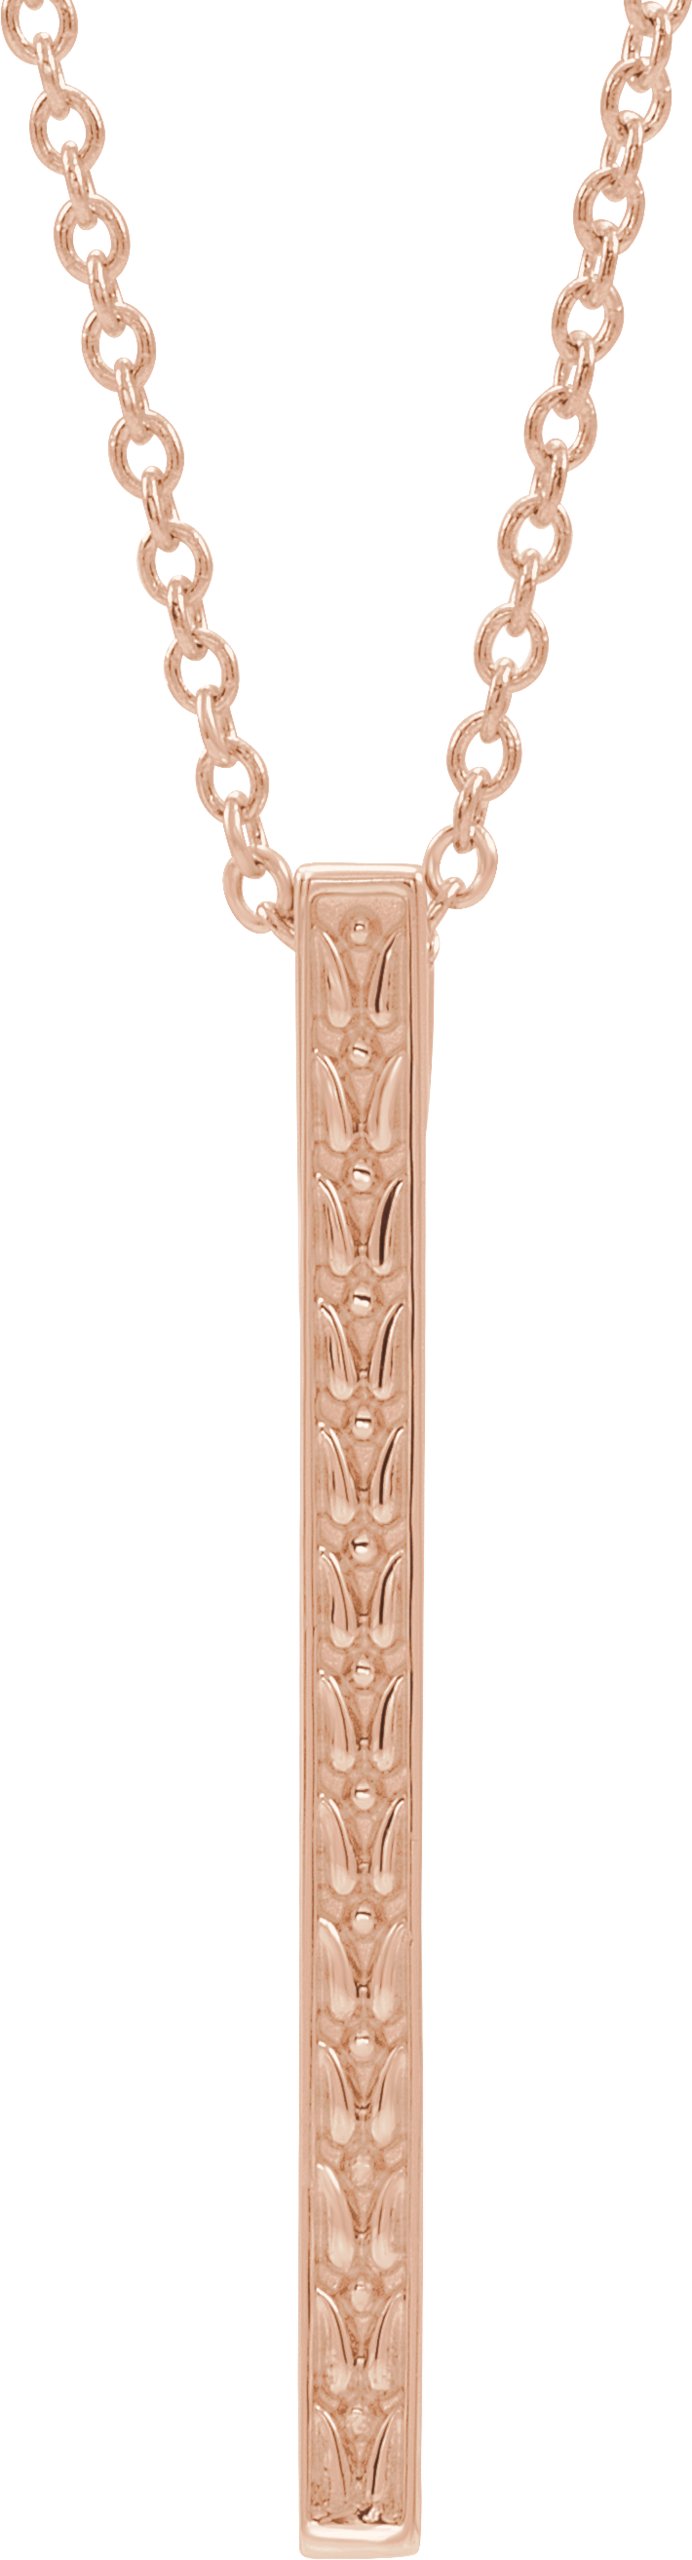 14K Rose Sculptural-Inspired Bar 16-18" Necklace